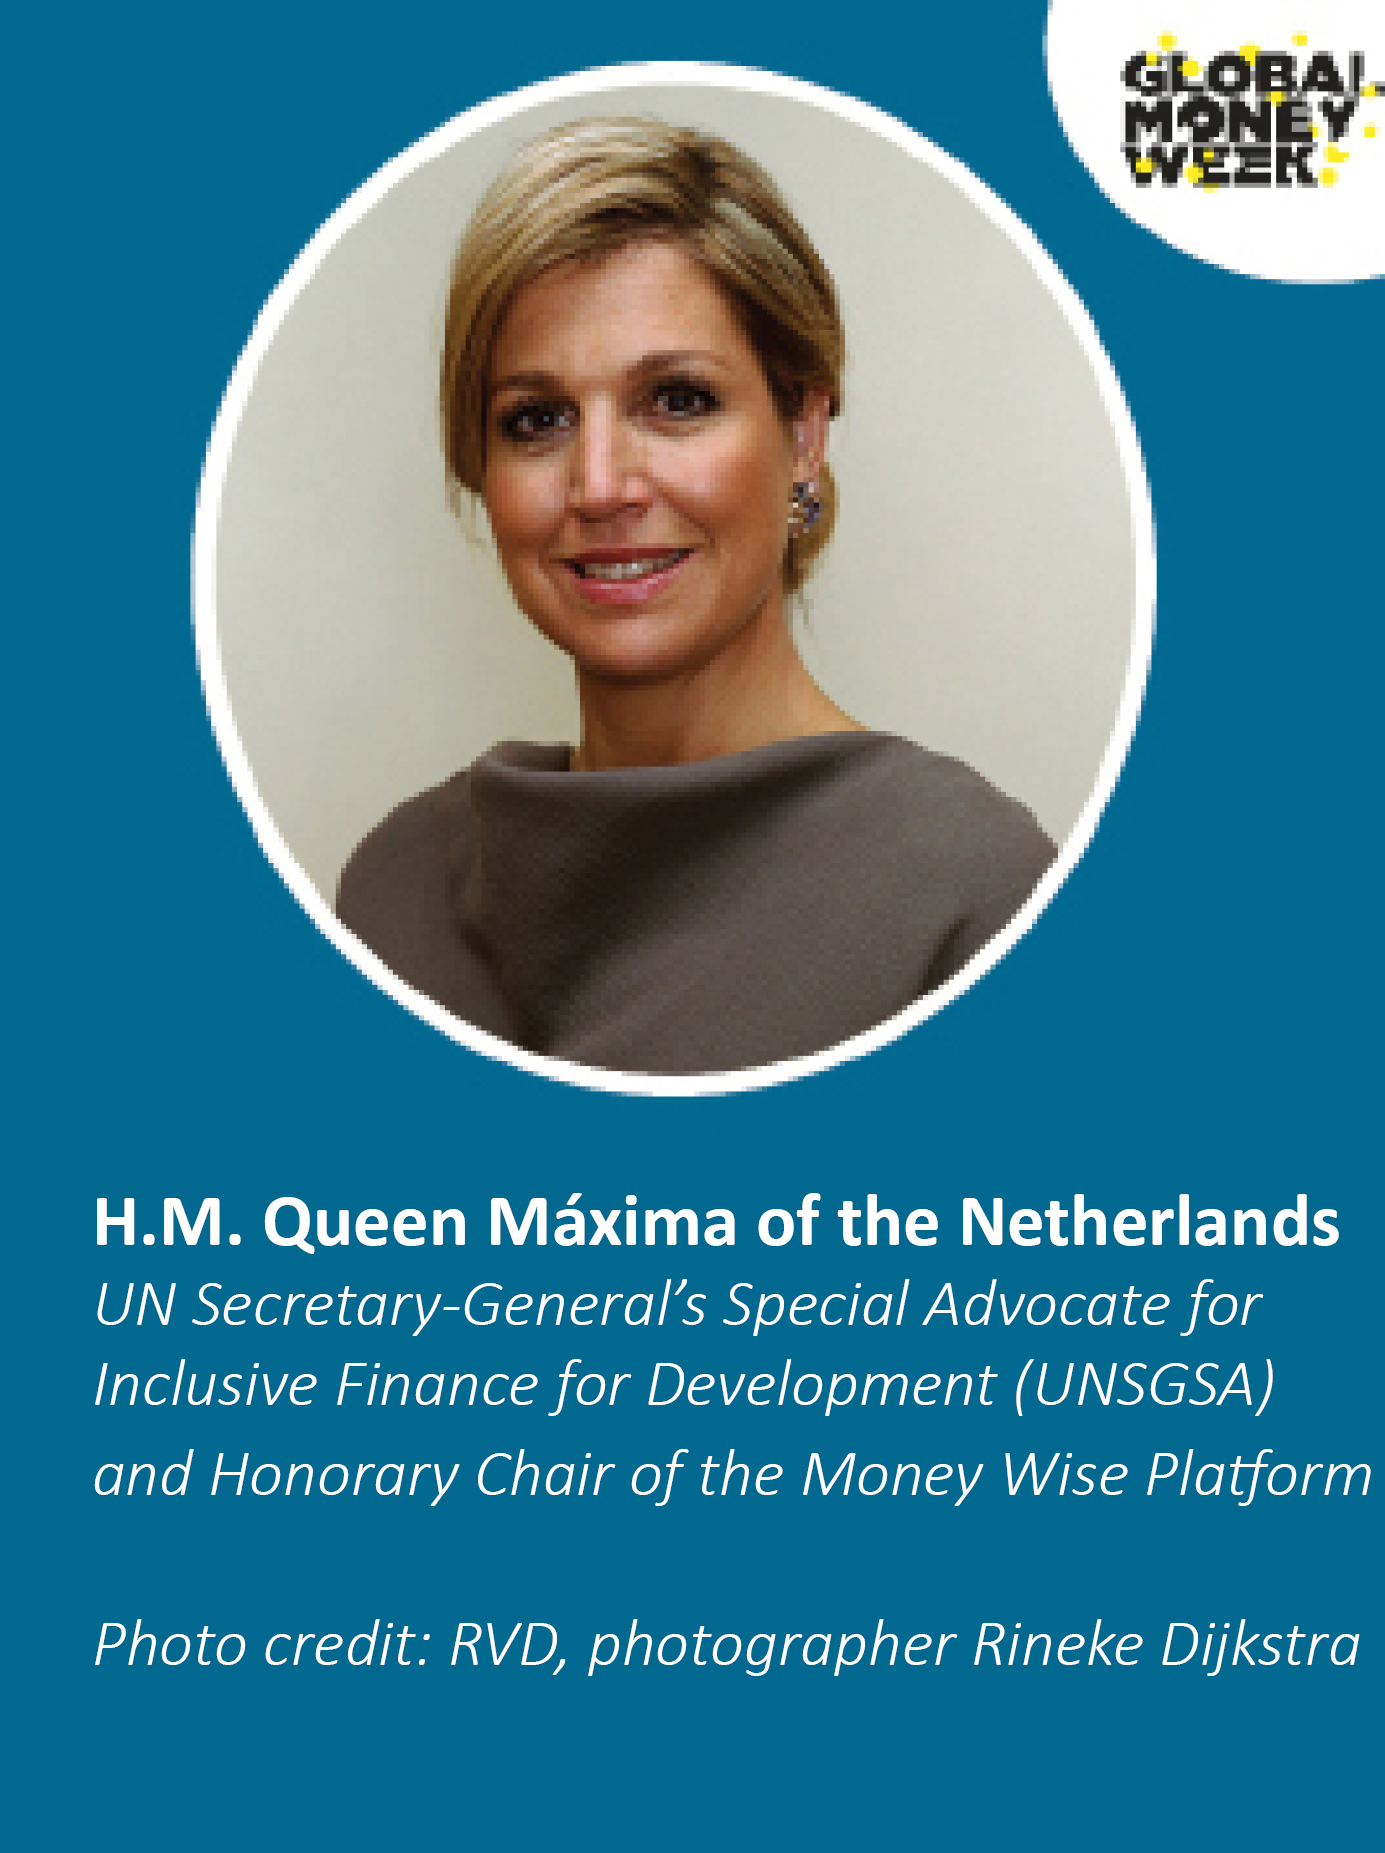 Rainha Máxima dos Países Baixos, UNSAGSA e Presidente Honorário da Plataforma Wise Money